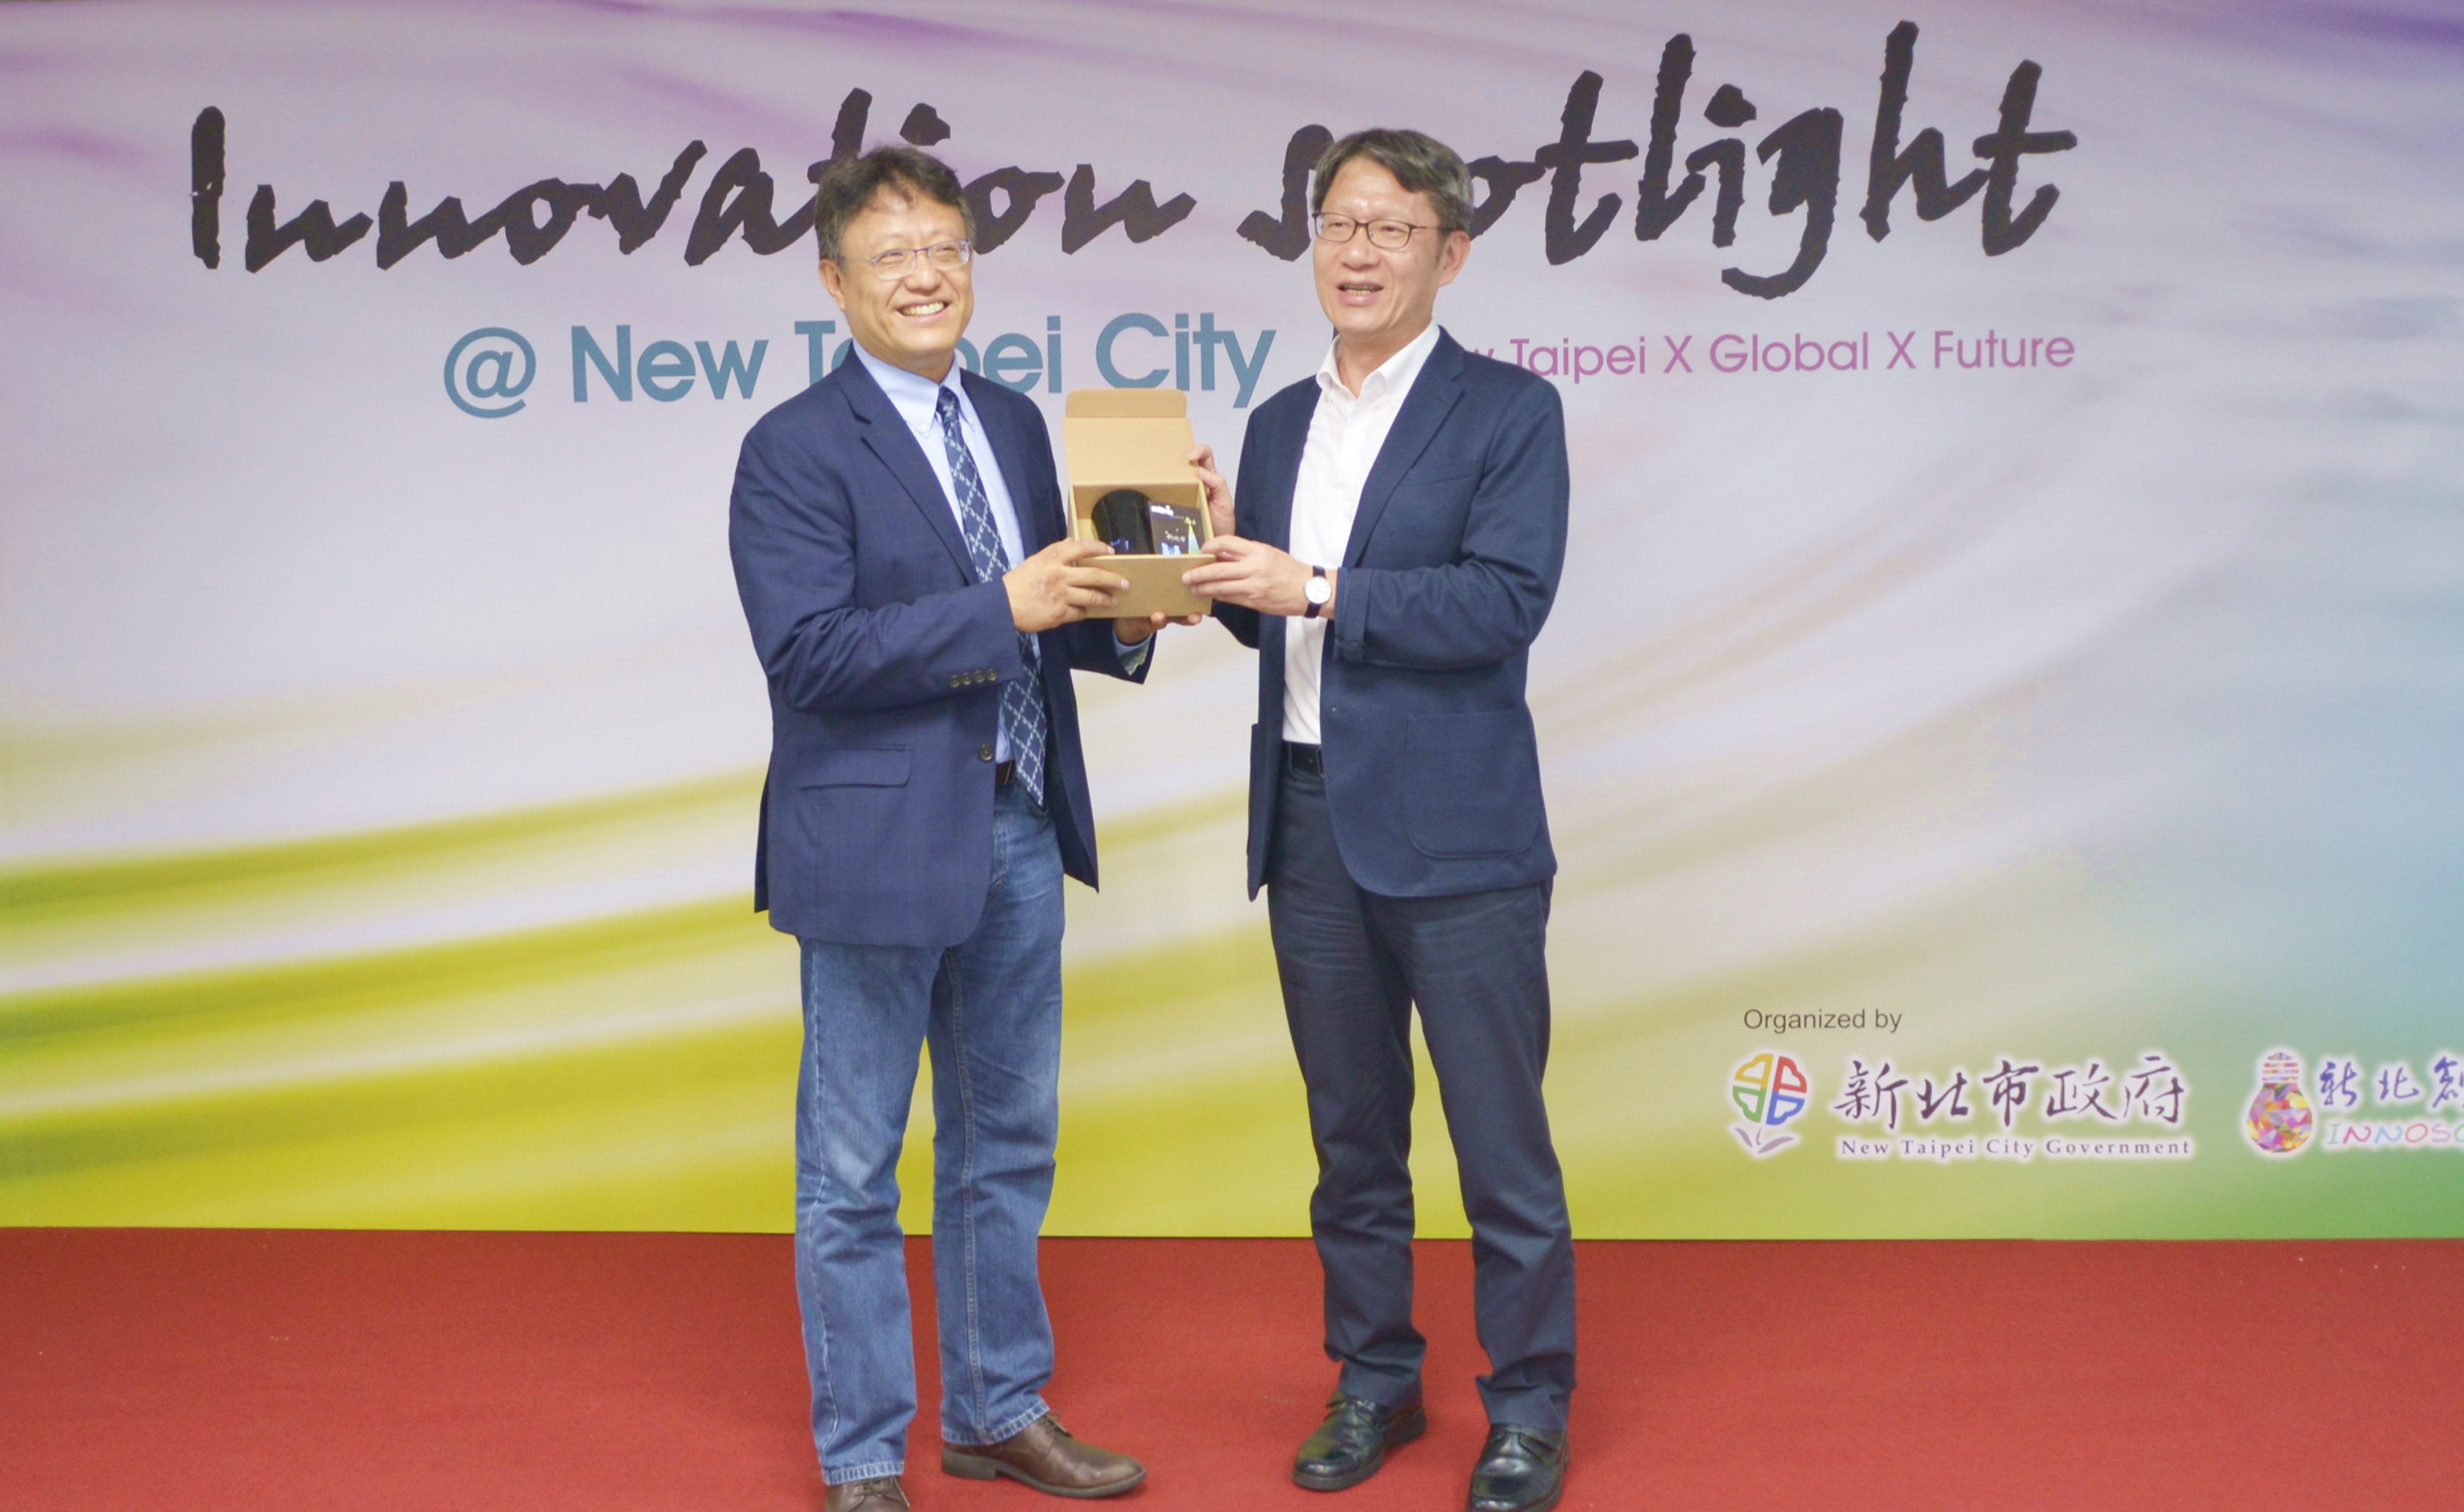 新北市副市長葉惠青(右)與亞洲育成協會會長黃經堯(左)互贈禮品